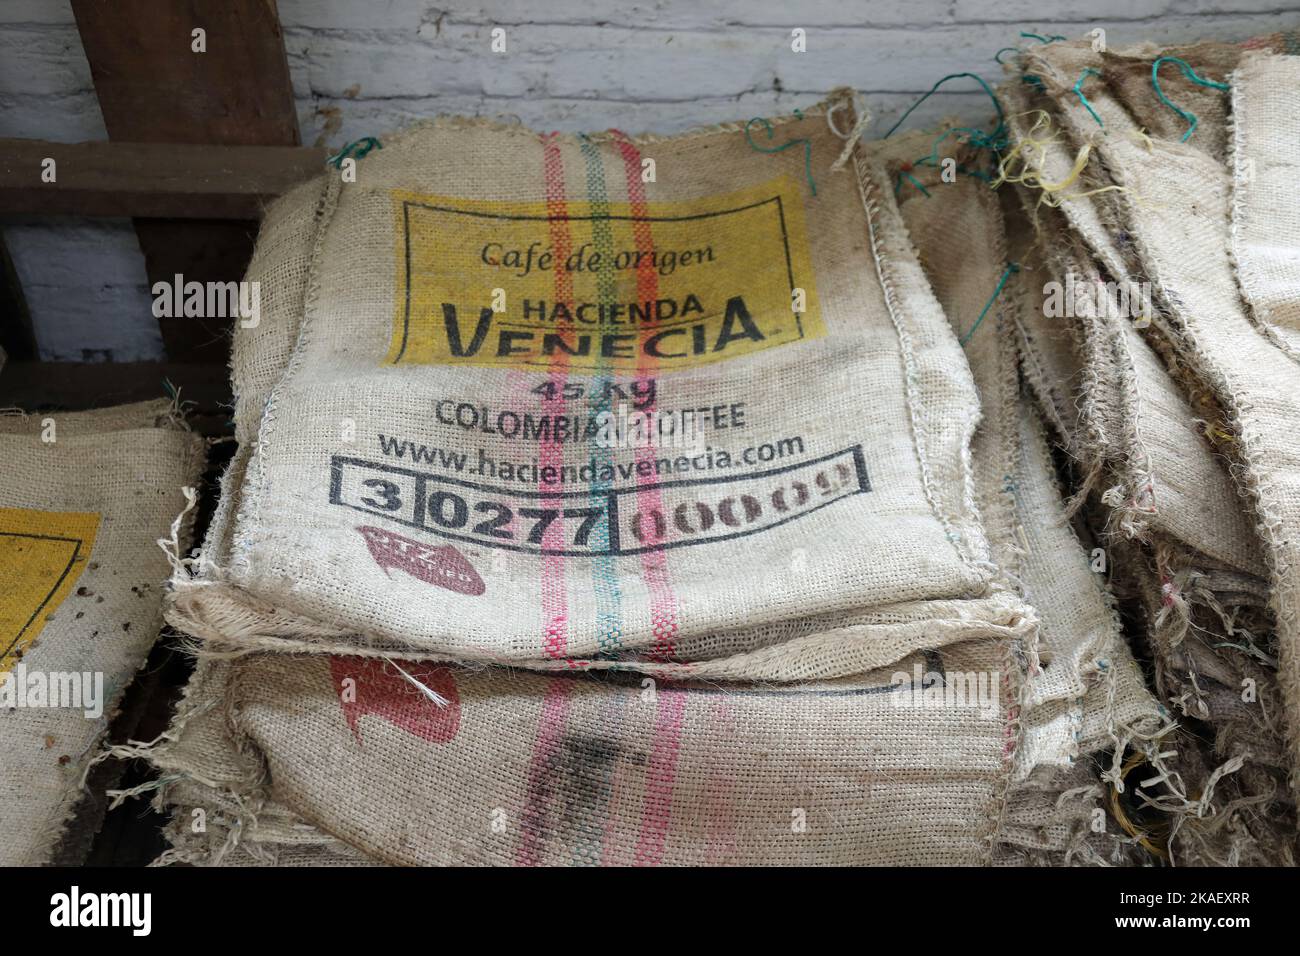 Mucchio di sacchi in una piantagione di caffè colombiana Foto Stock